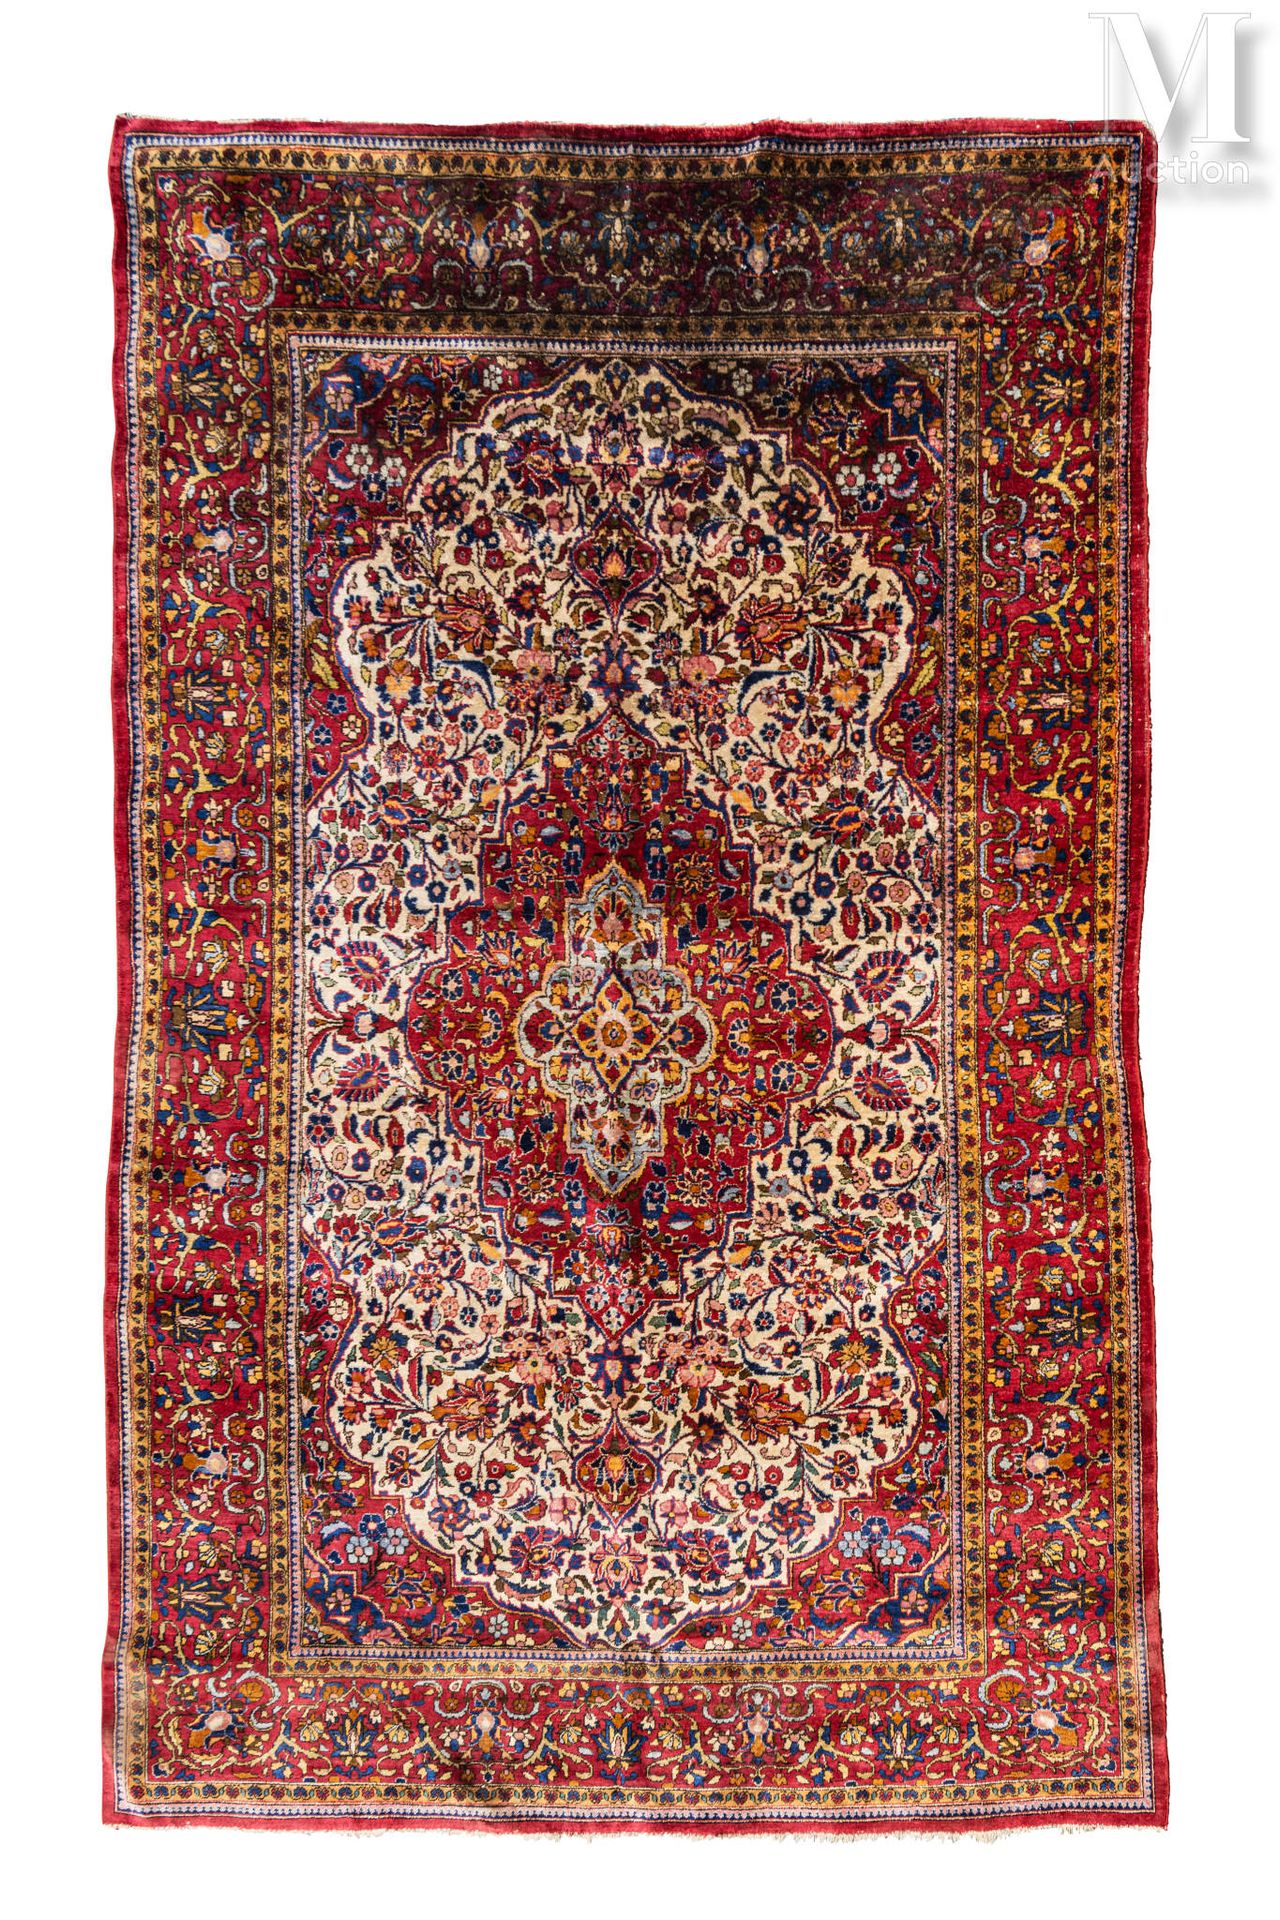 KECHAN 丝绸地毯，中央有紫罗兰色的奖章和花卉卷轴，边框为紫罗兰色。有花环的大边框 
染色 
220 x 120厘米